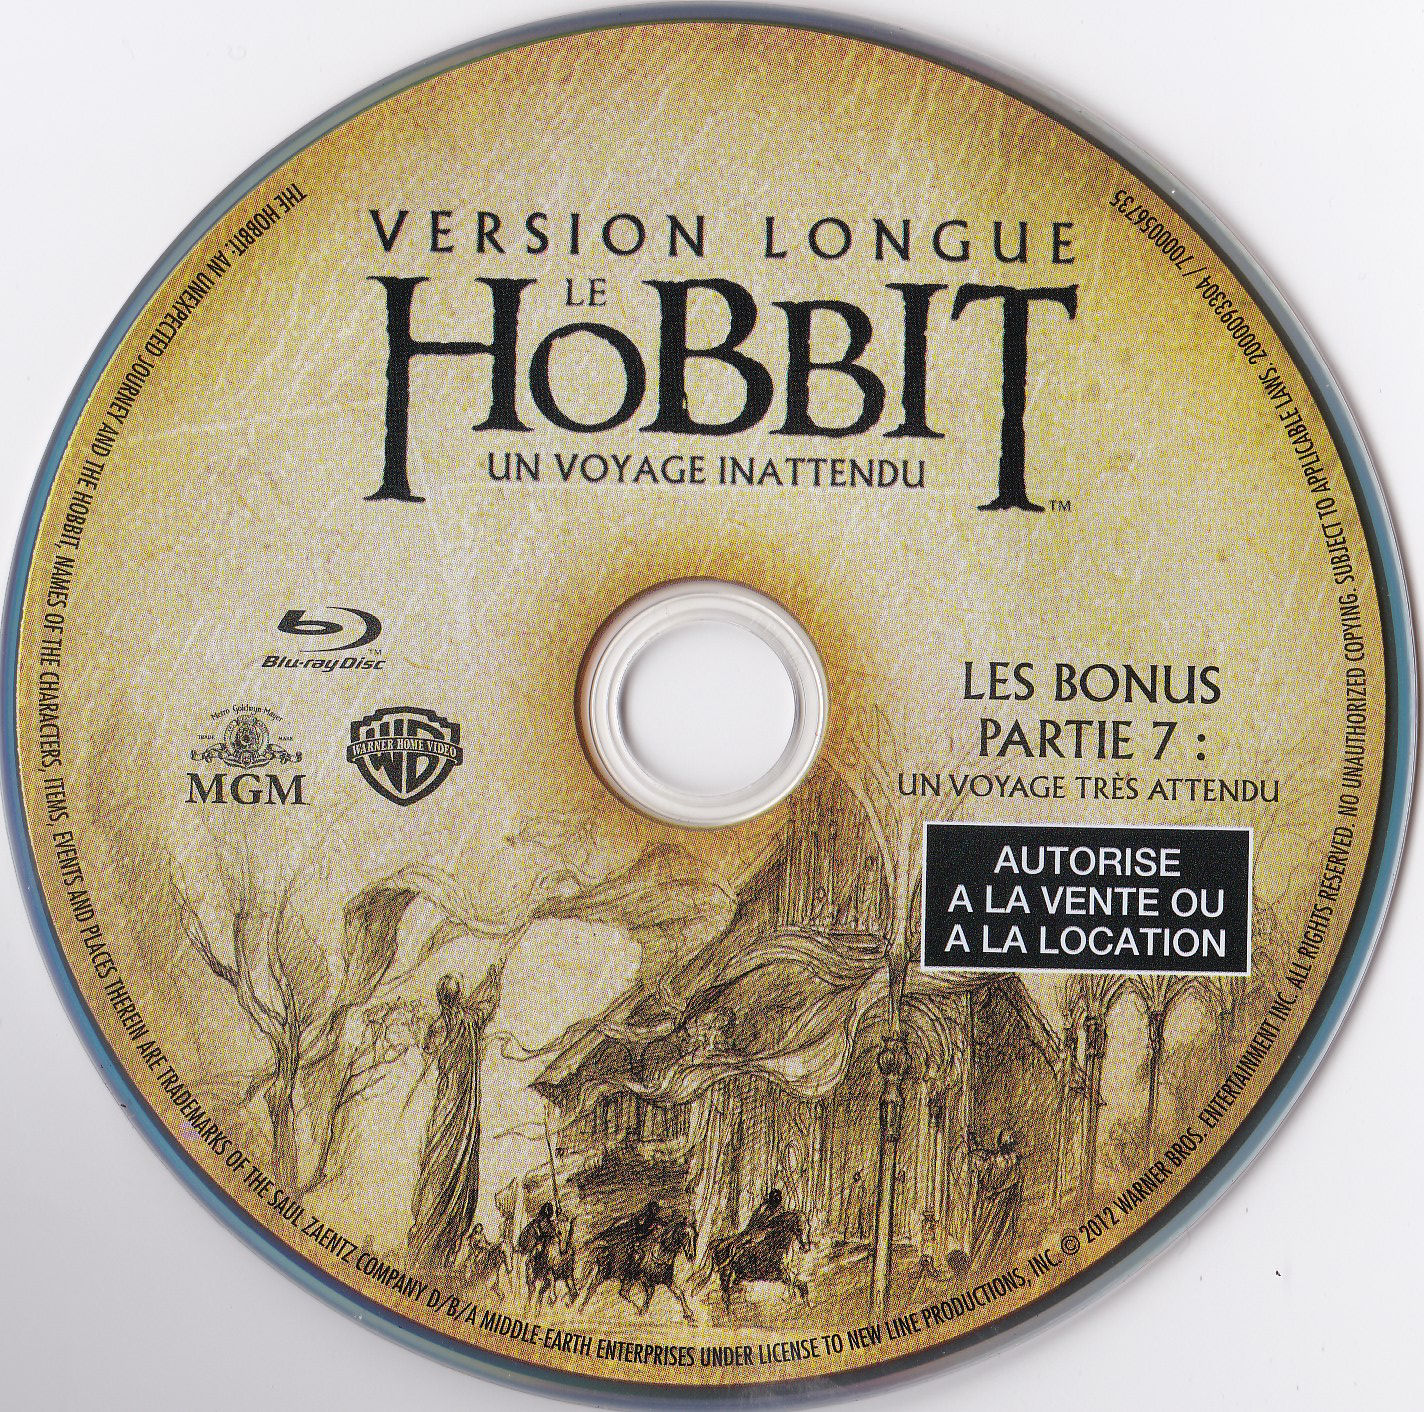 Le Hobbit un voyage inattendu (Version longue) BONUS Partie 7 (BLU-RAY)